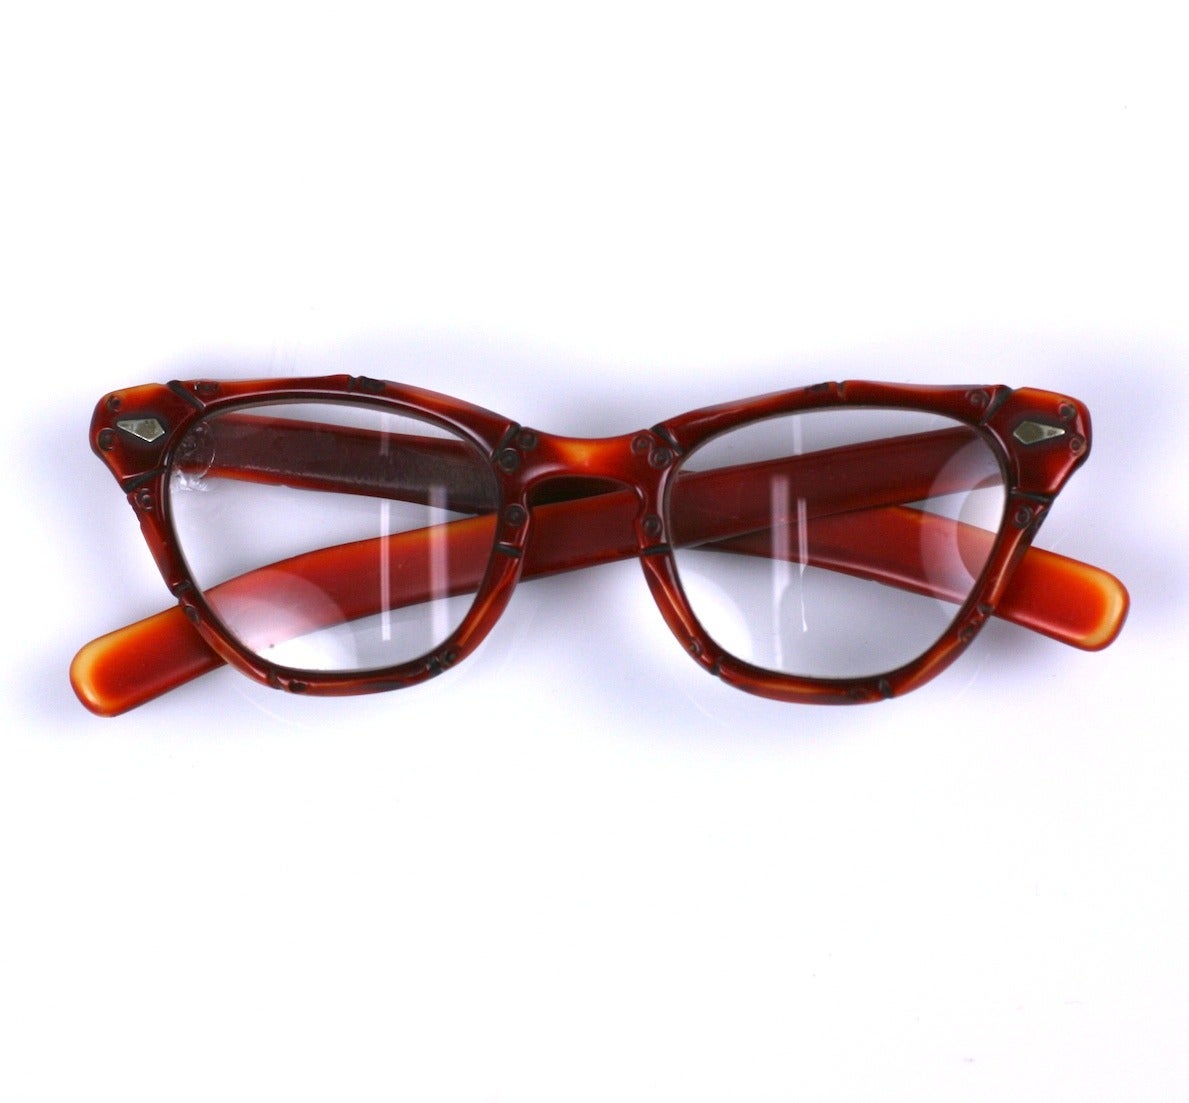 Montures de lunettes Art Déco en bakélite sculptées à la main avec une magnifique patine. La bakélite crème avec une patine rouge-orange crée l'apparence du bambou avec une segmentation sculptée.
Ces charmantes montures ont actuellement des verres